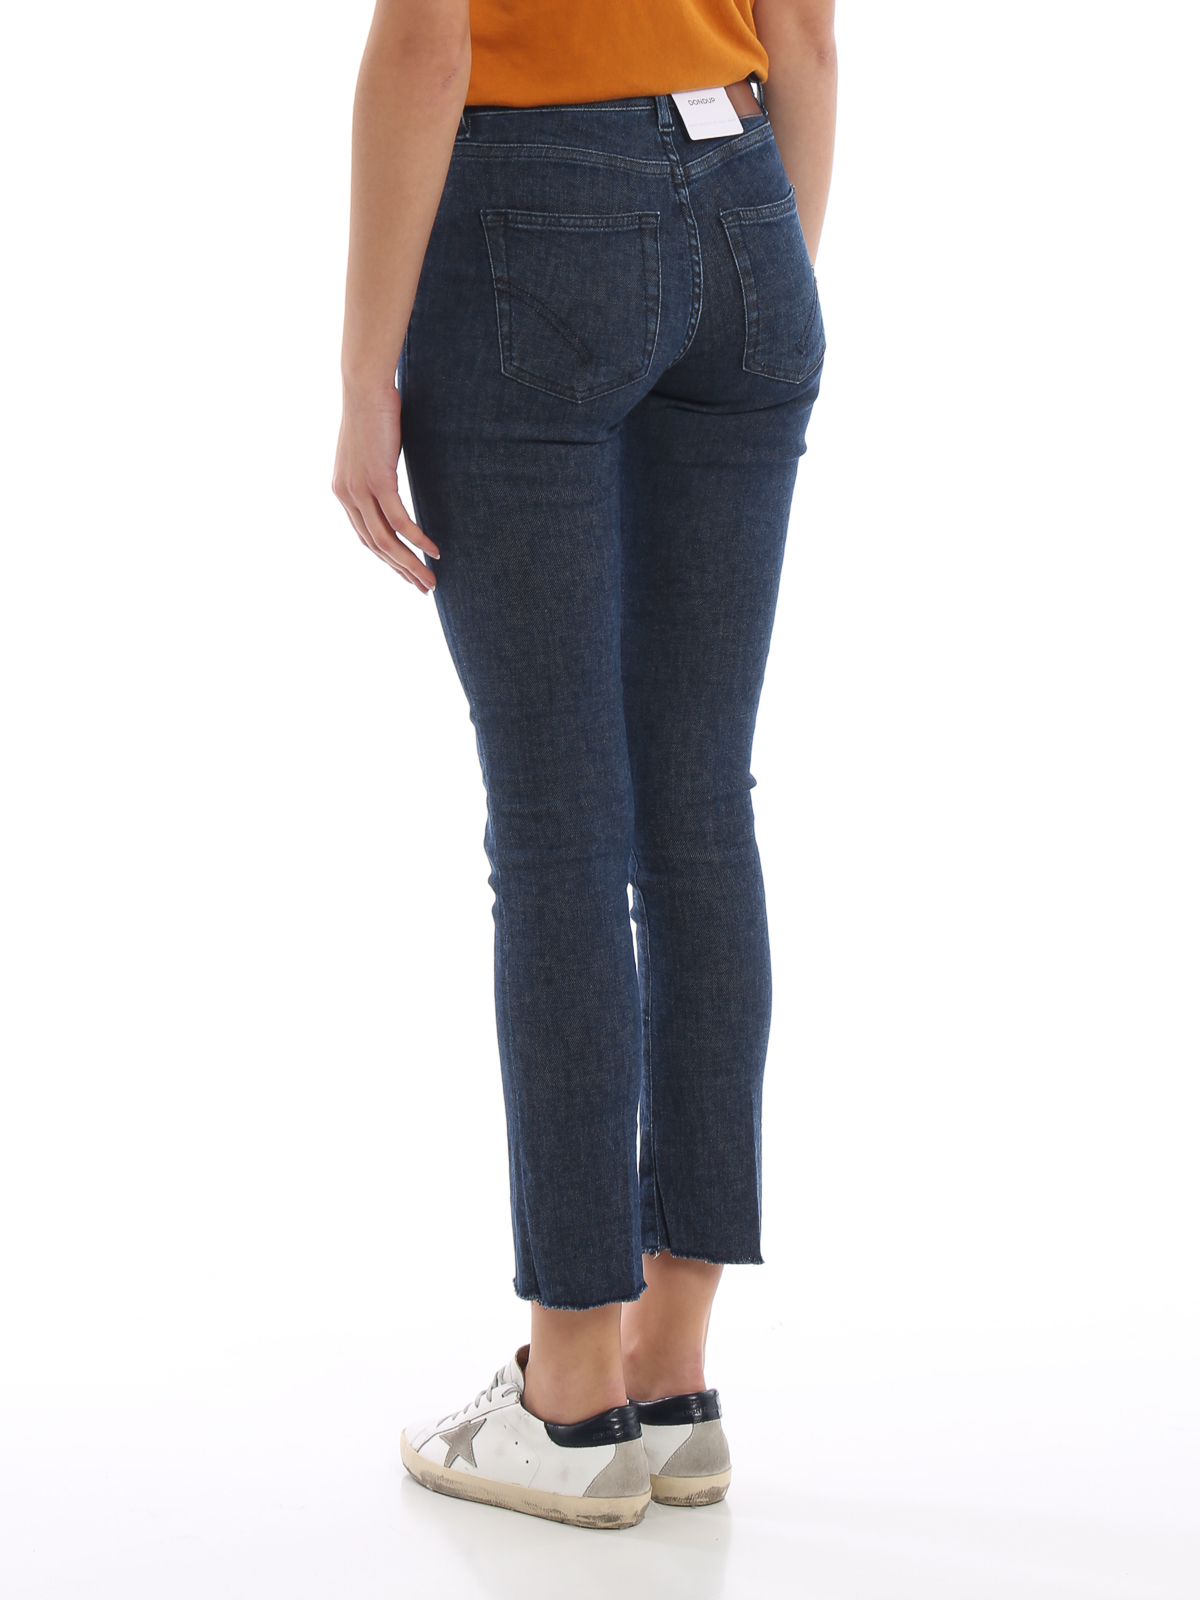 high waist jeans online